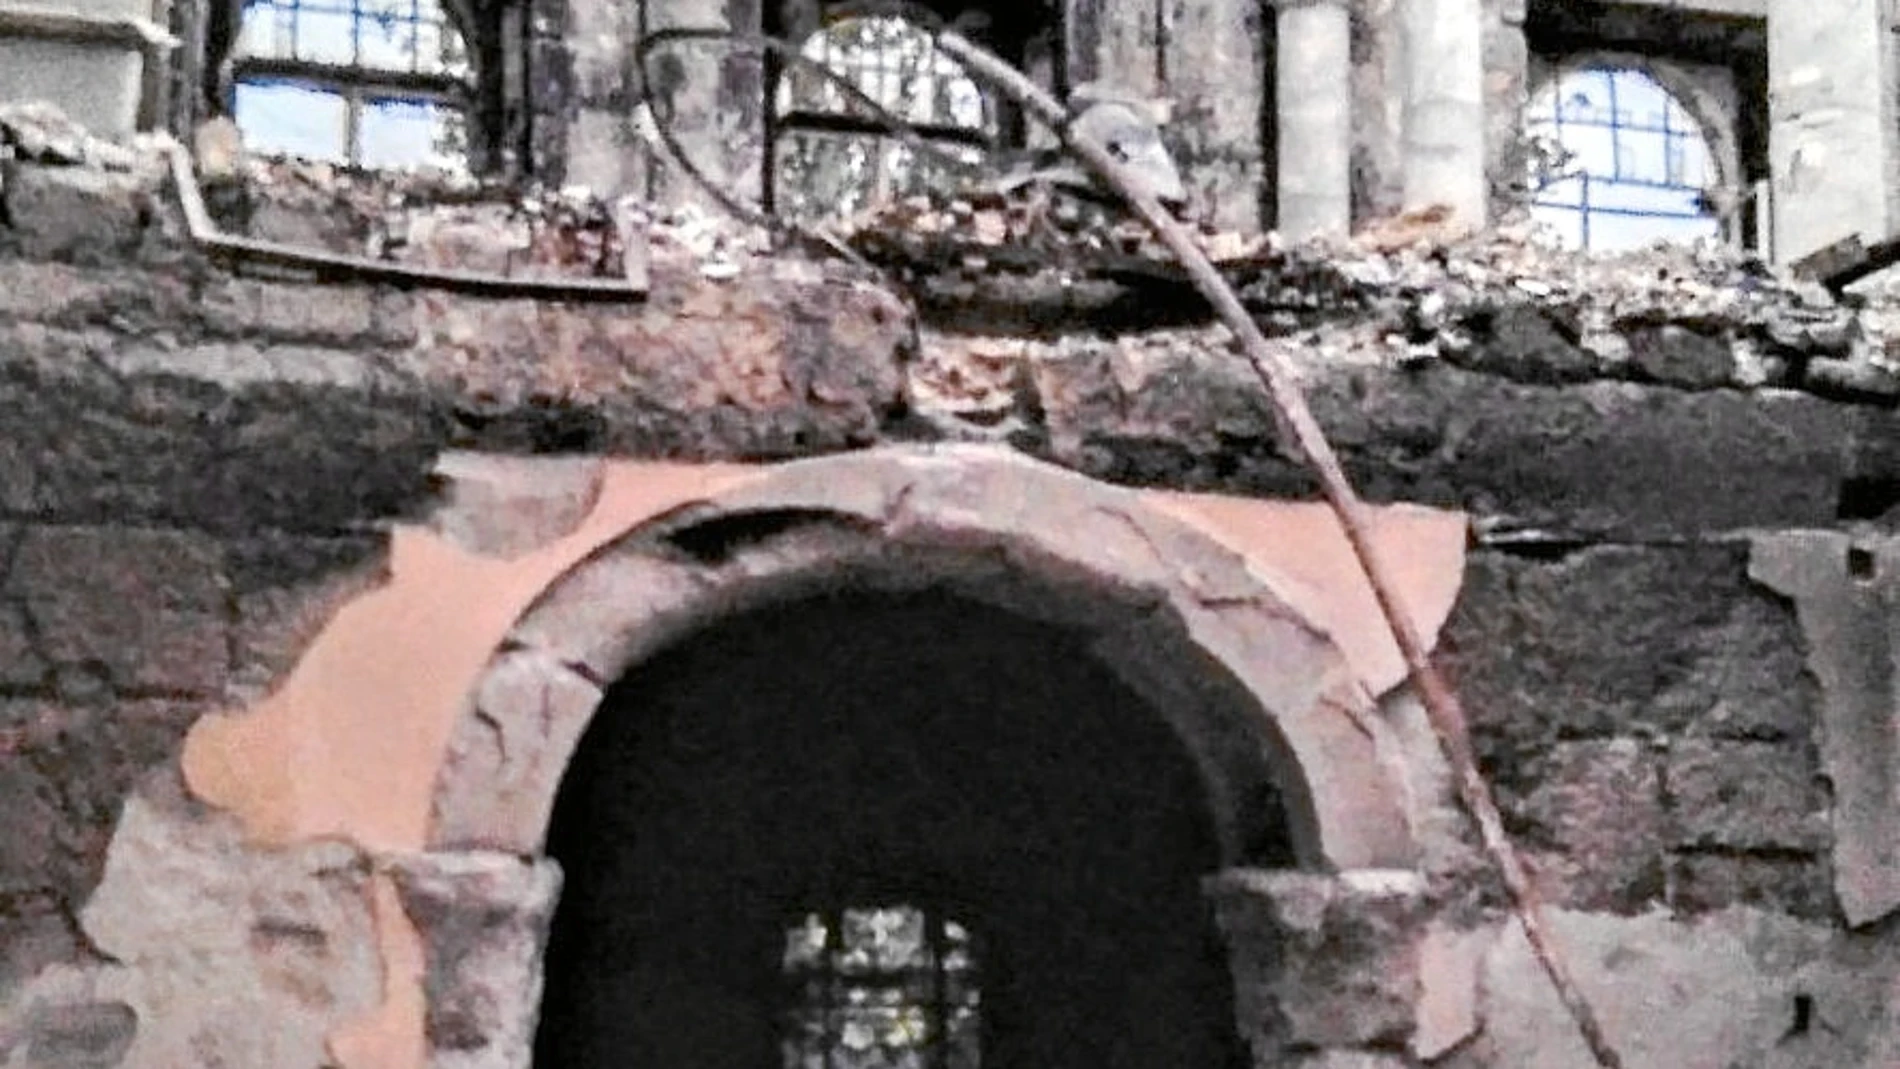 El palacio, un inmueble de tres alturas, ha quedado reducido a escombros